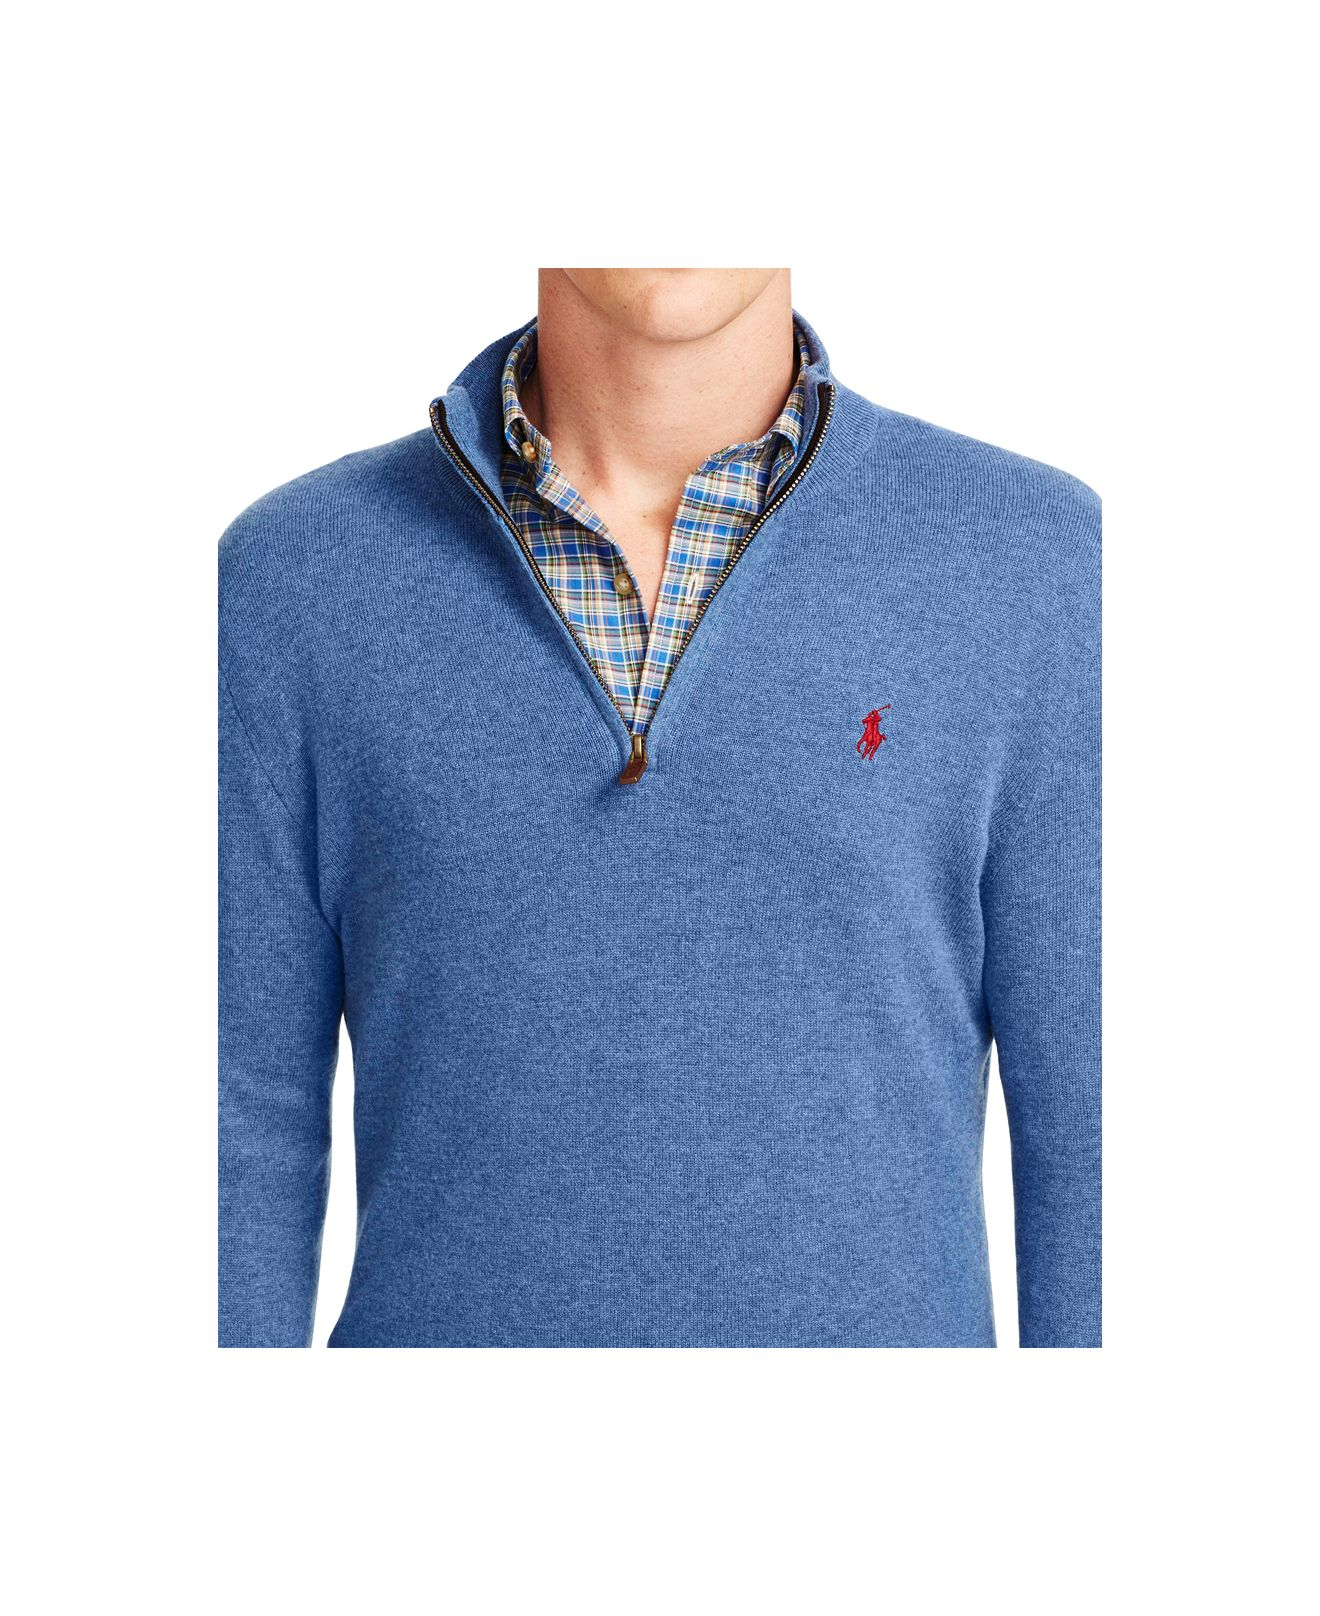 Polo Ralph Lauren Merino Half-zip Sweater in Blue for Men - Lyst